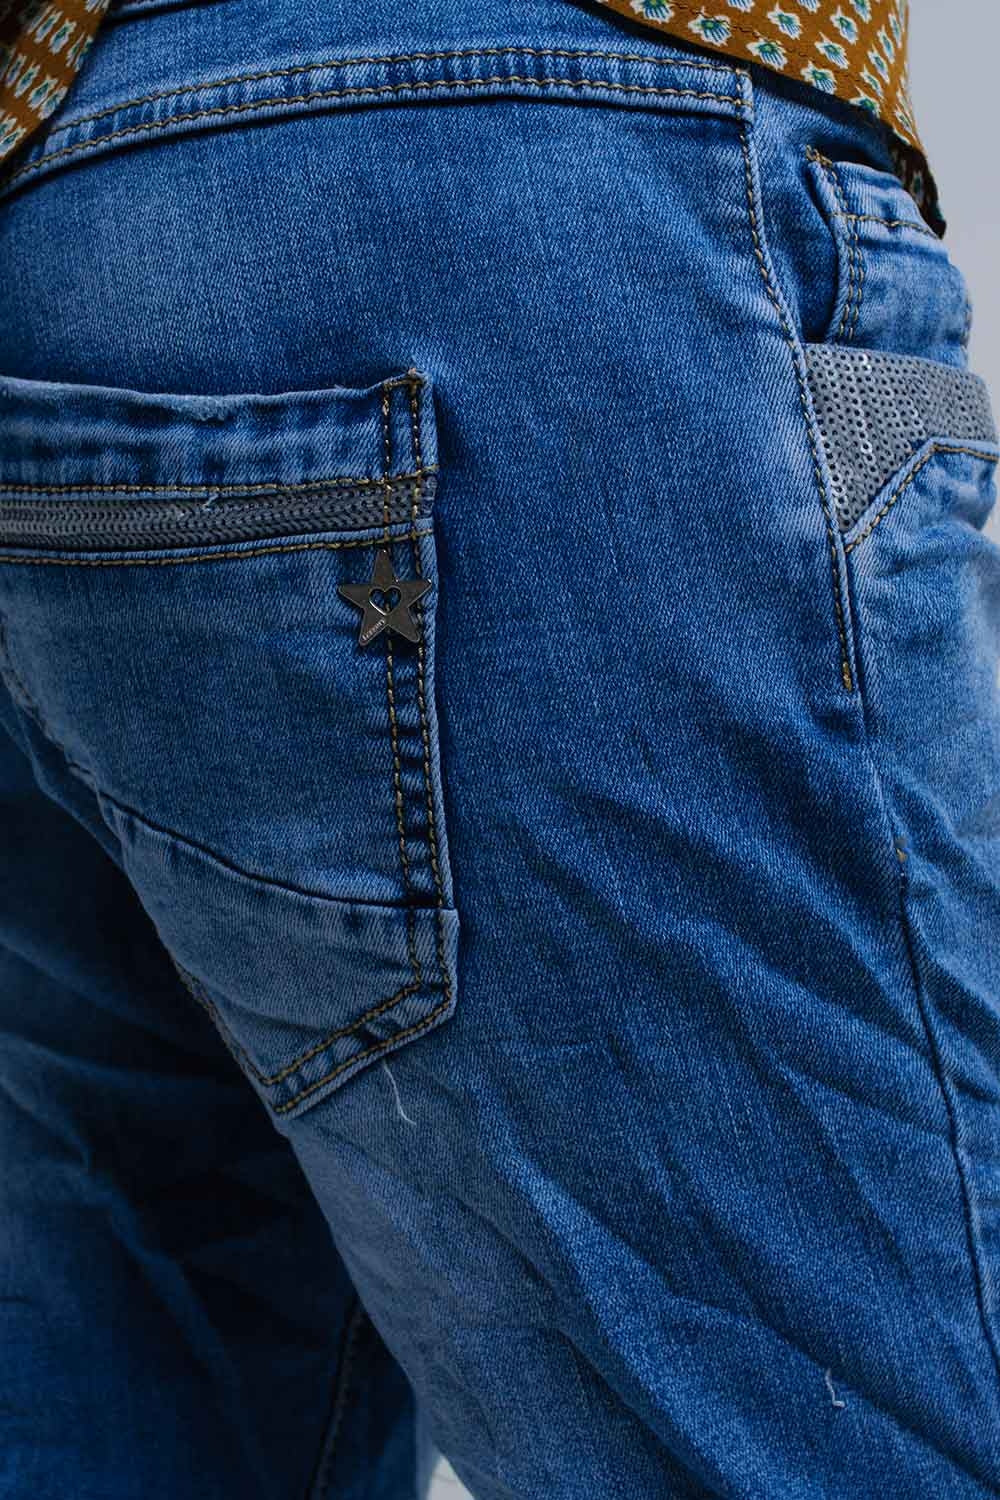 Jeans skinny blu con dettagli in paillettes